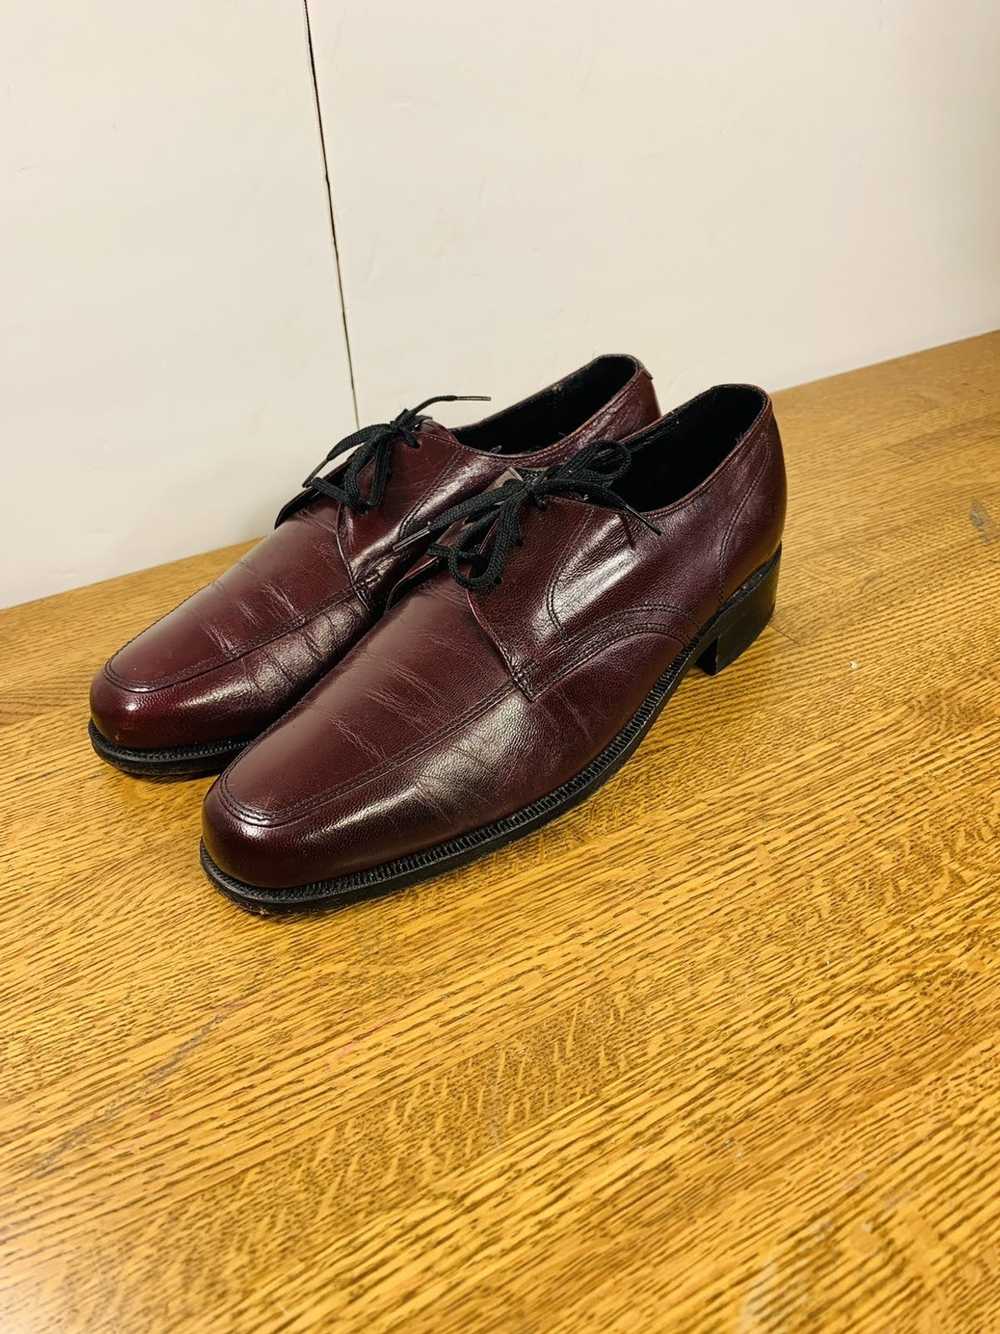 Florsheim Florsheim Men’s Oxfords Dress Shoes - image 2